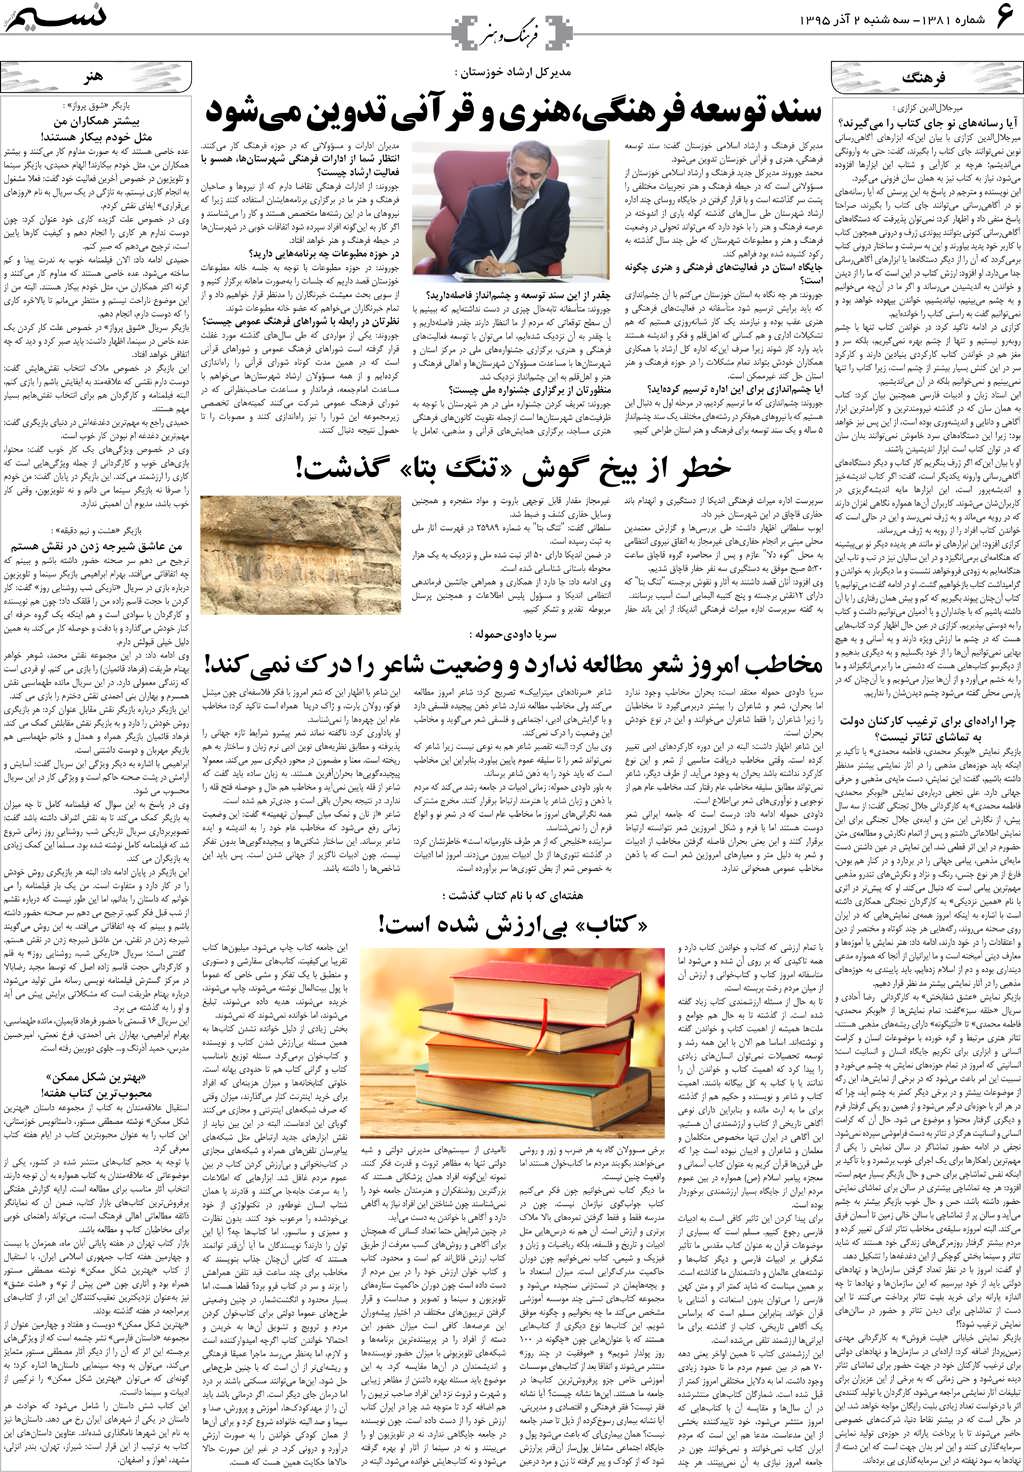 صفحه فرهنگ و هنر روزنامه نسیم شماره 1381